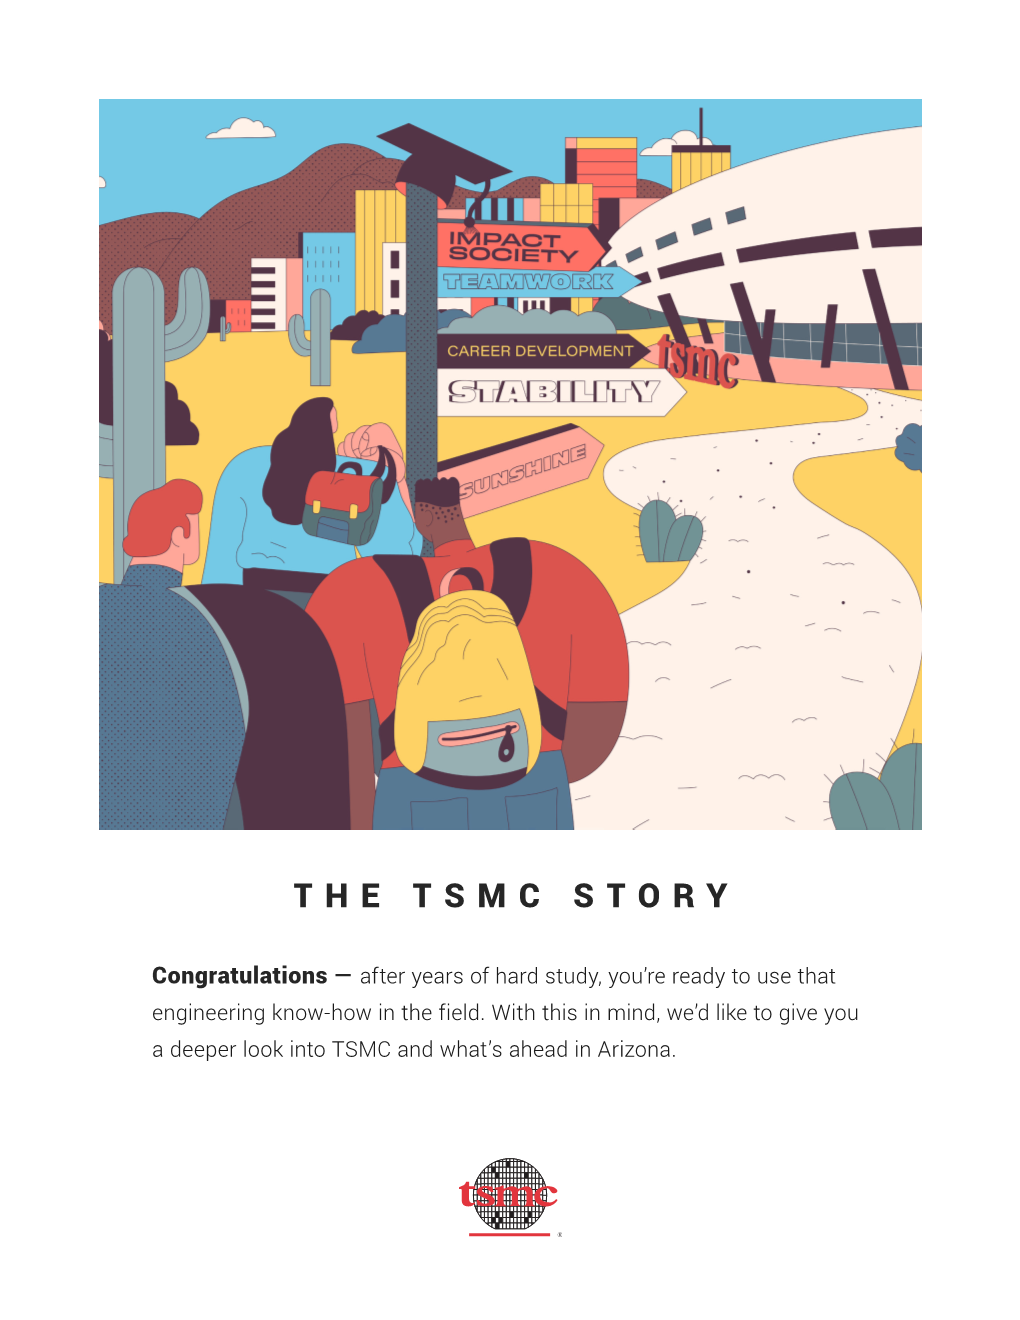 The Tsmc Story